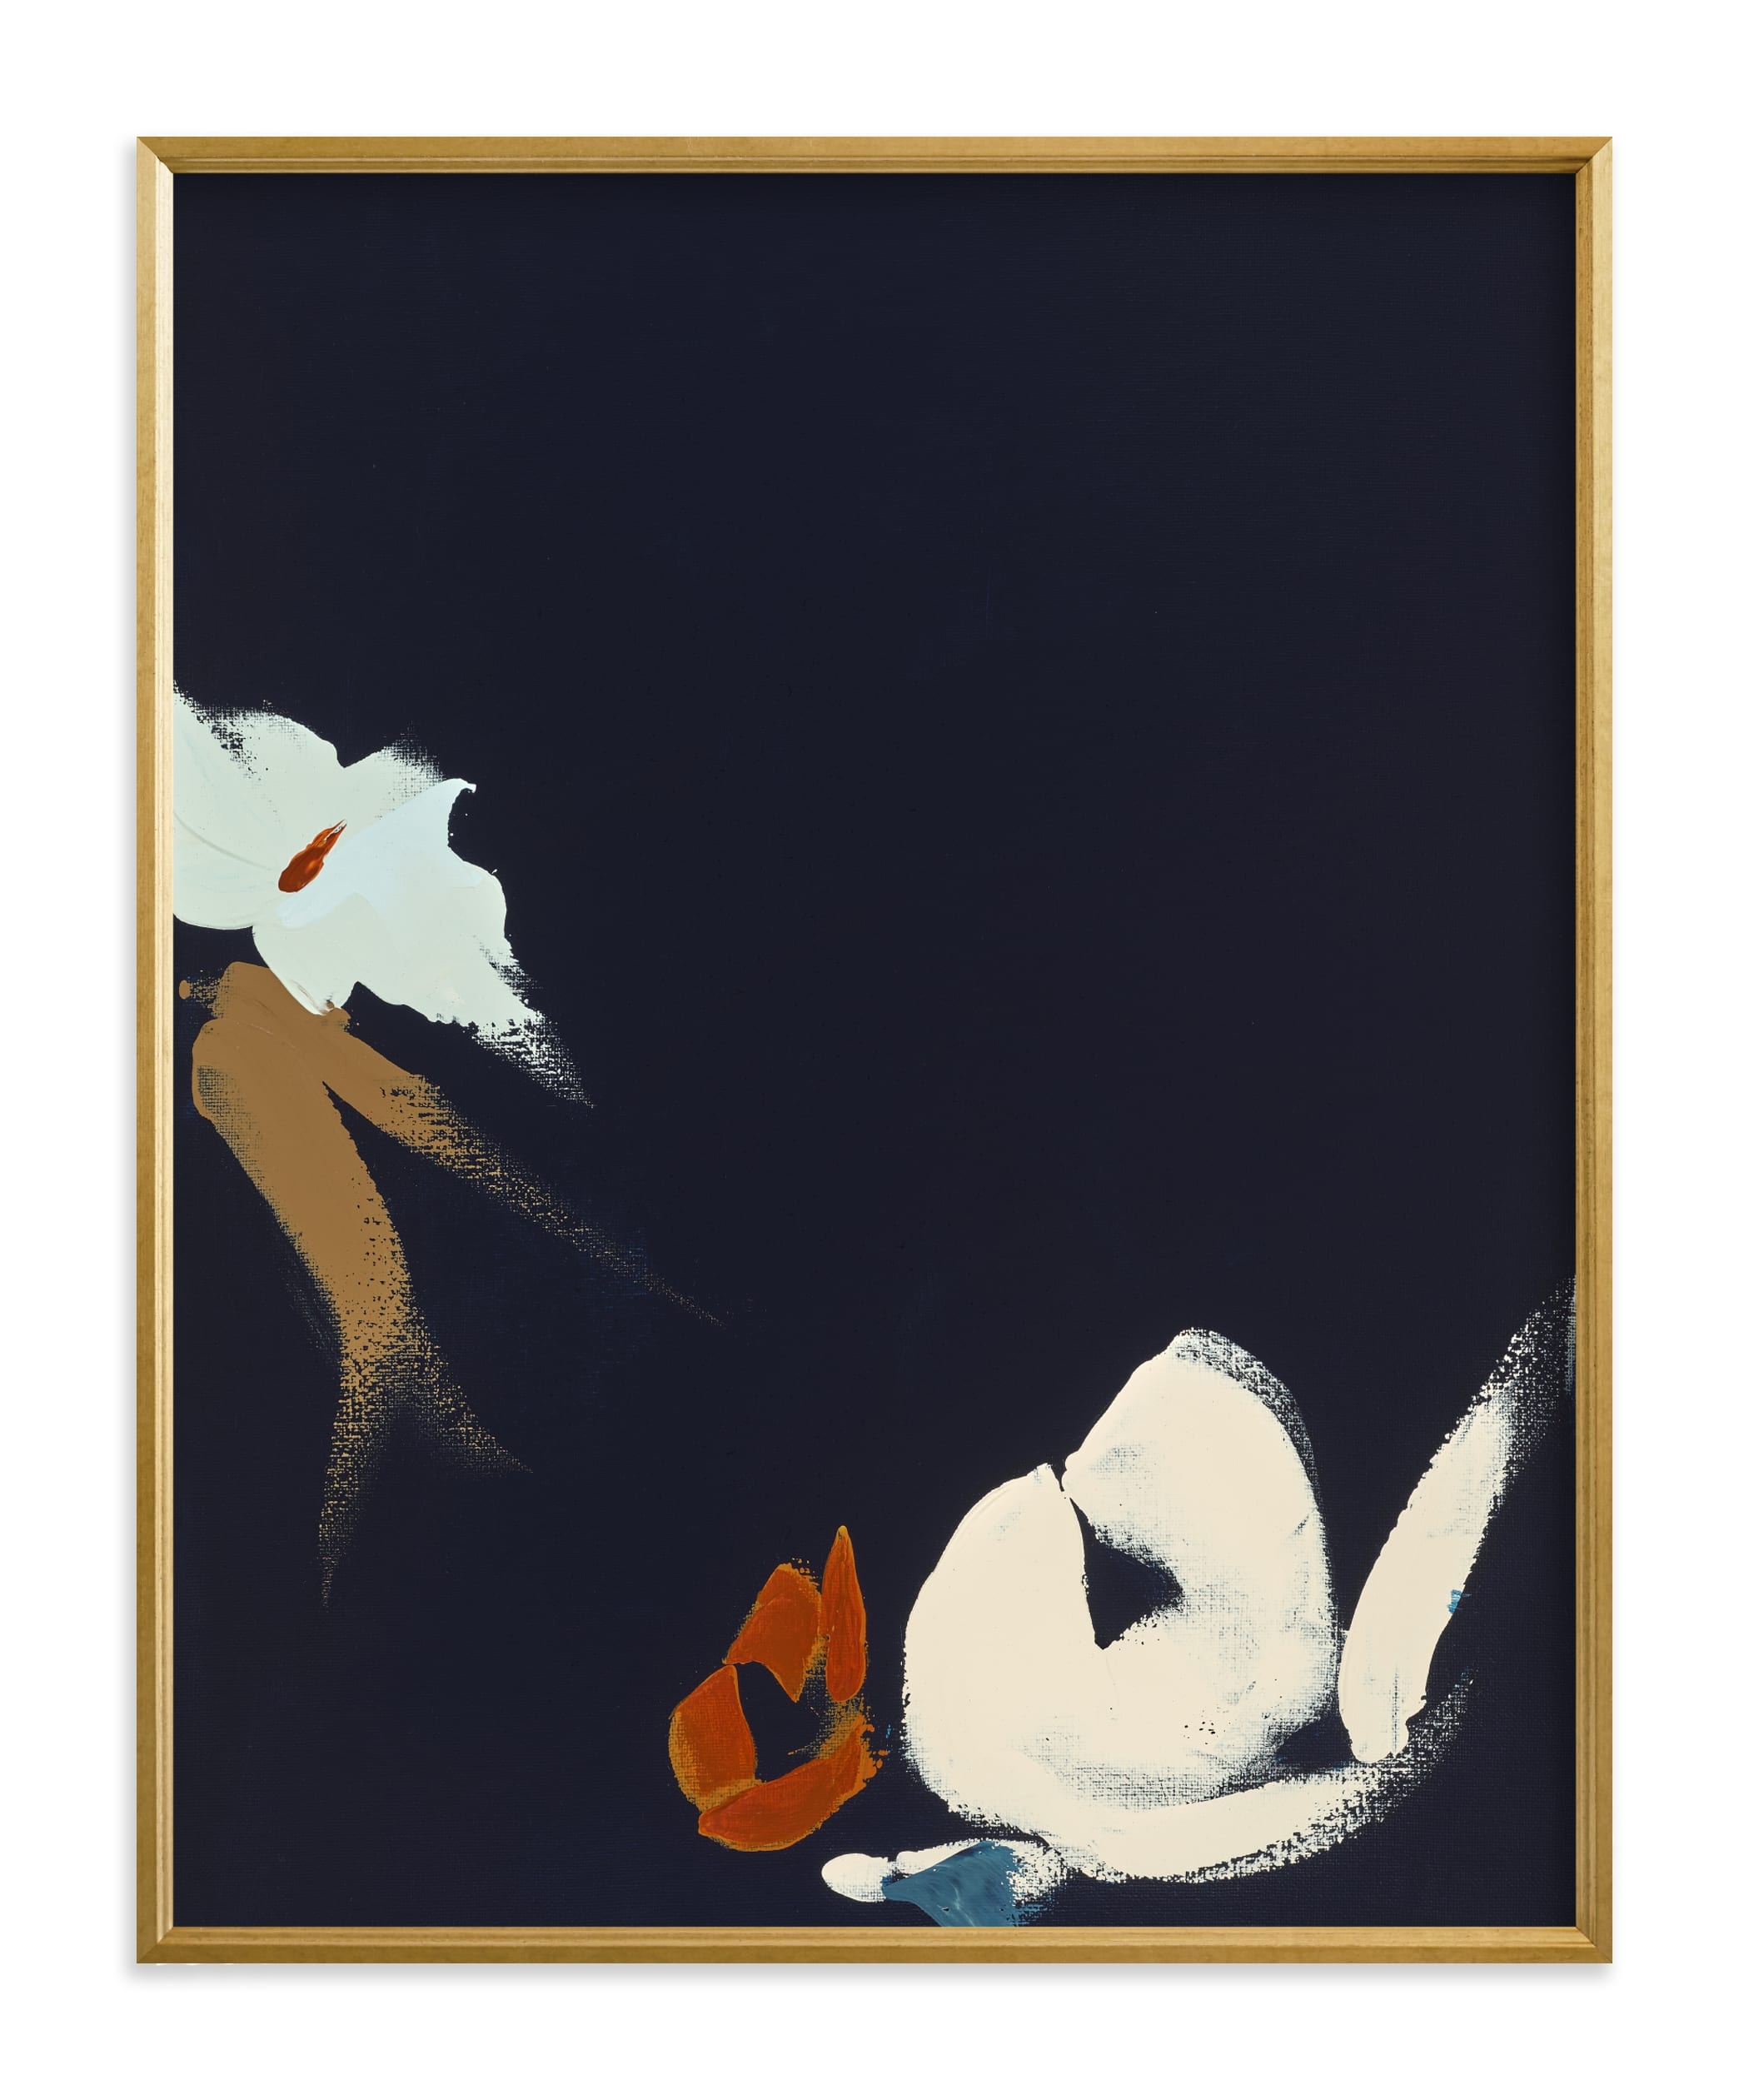 Abstract Botanical Navy Shadows #1 Art Print - Image 0